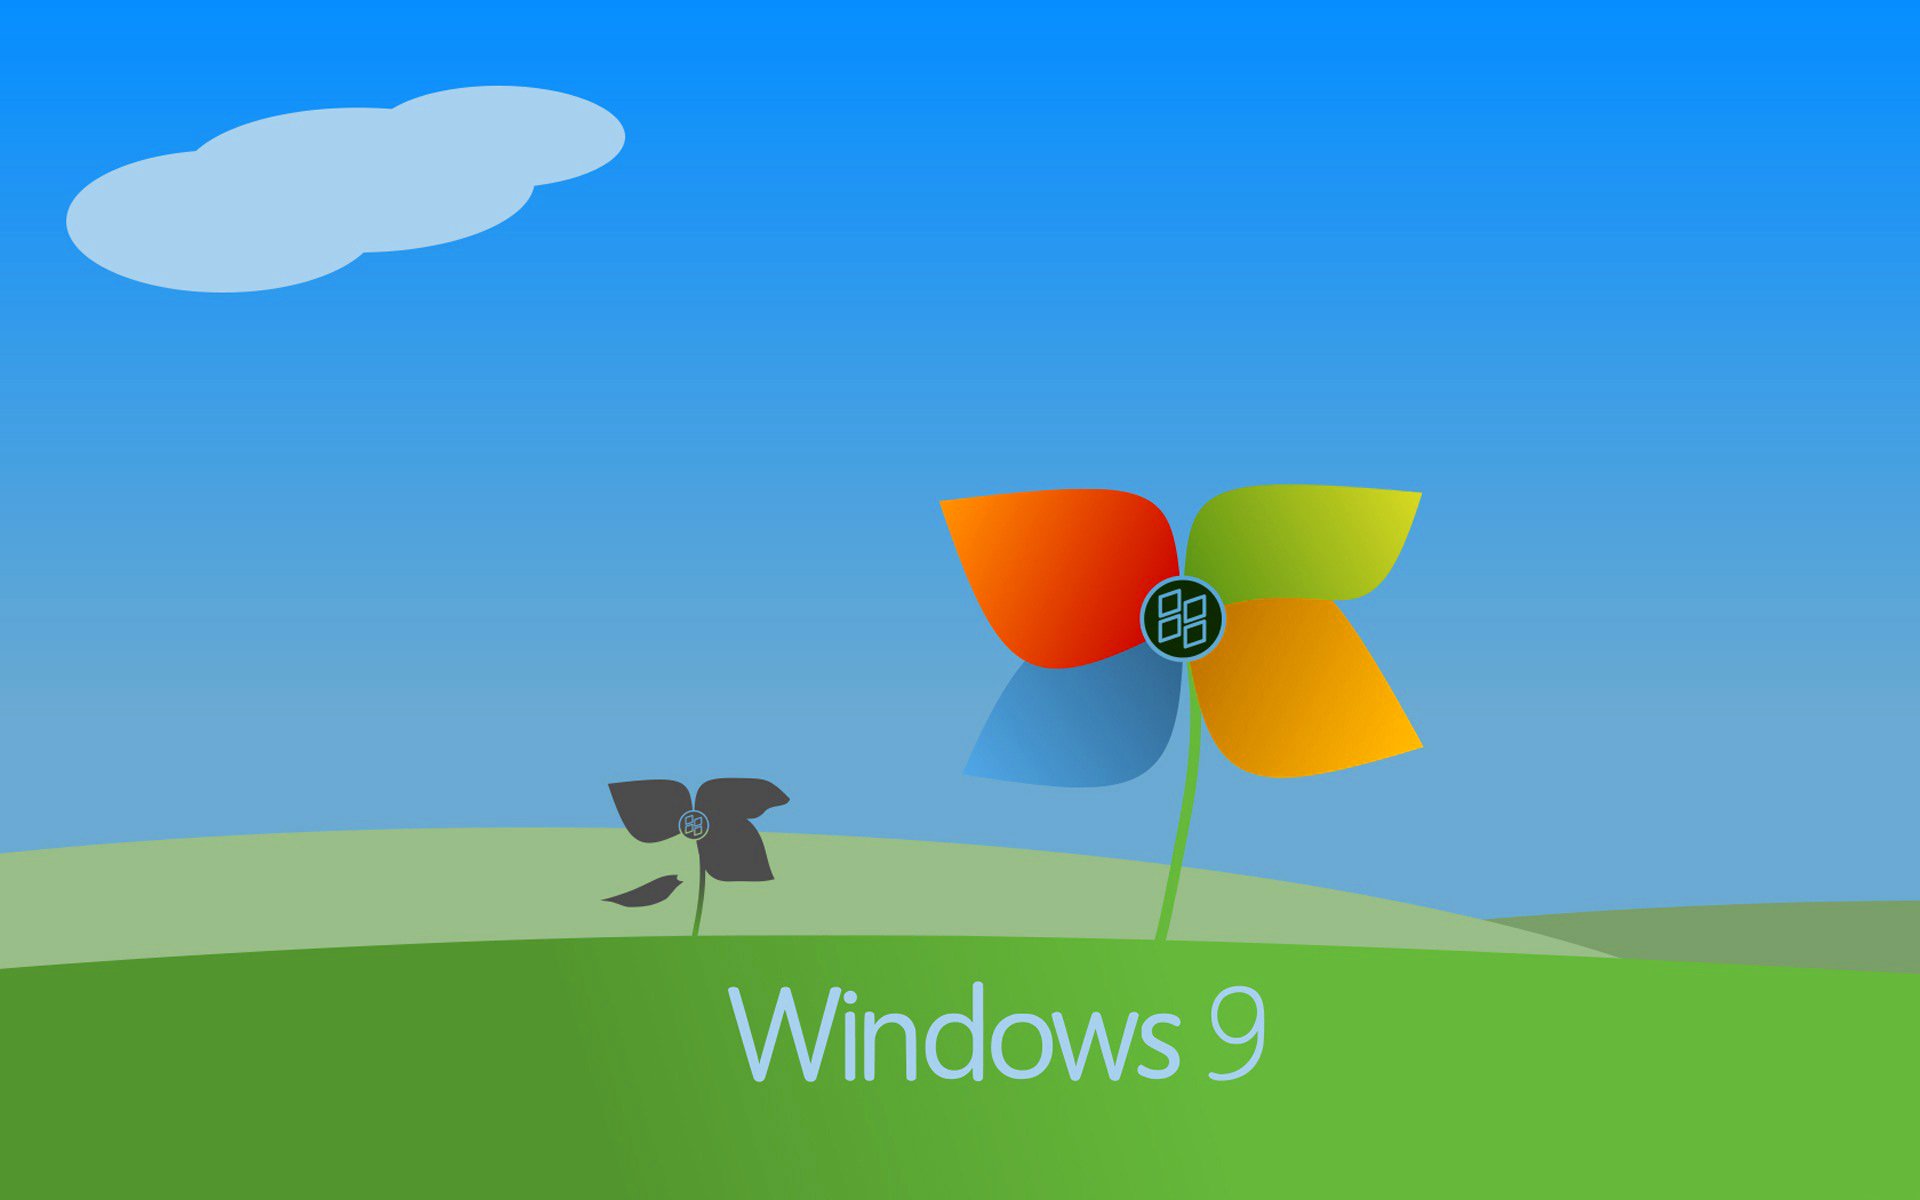 Можно ли будет использовать windows 7 после 14 января 2020 года: официальное разъяснение microsoft